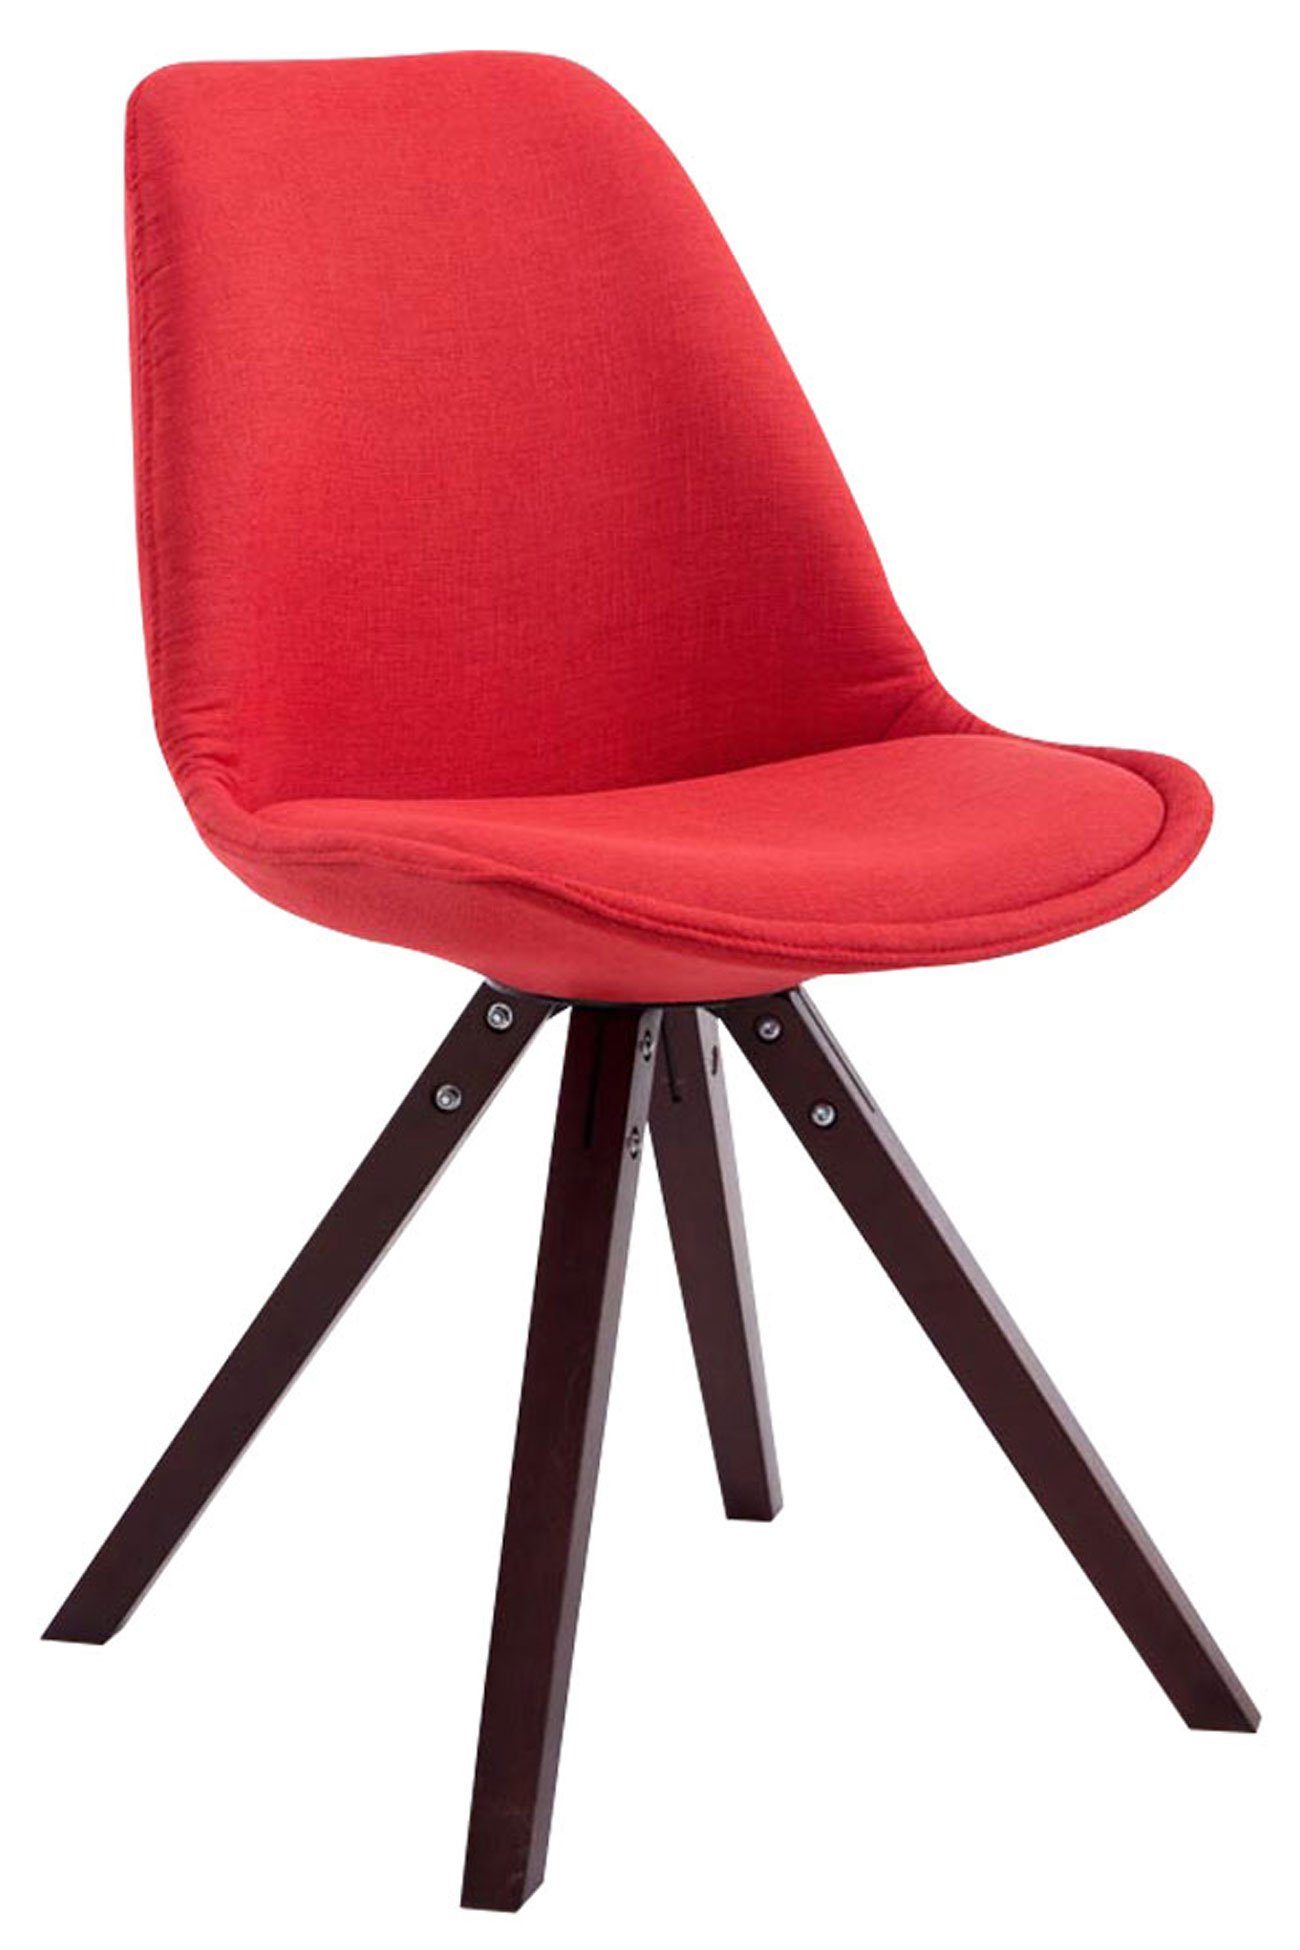 Konferenzstuhl Sitzfläche rot Cappuccino Gestell: - Toulon Sitzfläche: hochwertig gepolsterter mit TPFLiving square - Buchenholz Esszimmerstuhl Besucherstuhl - (Küchenstuhl Stoff Wohnzimmerstuhl), -